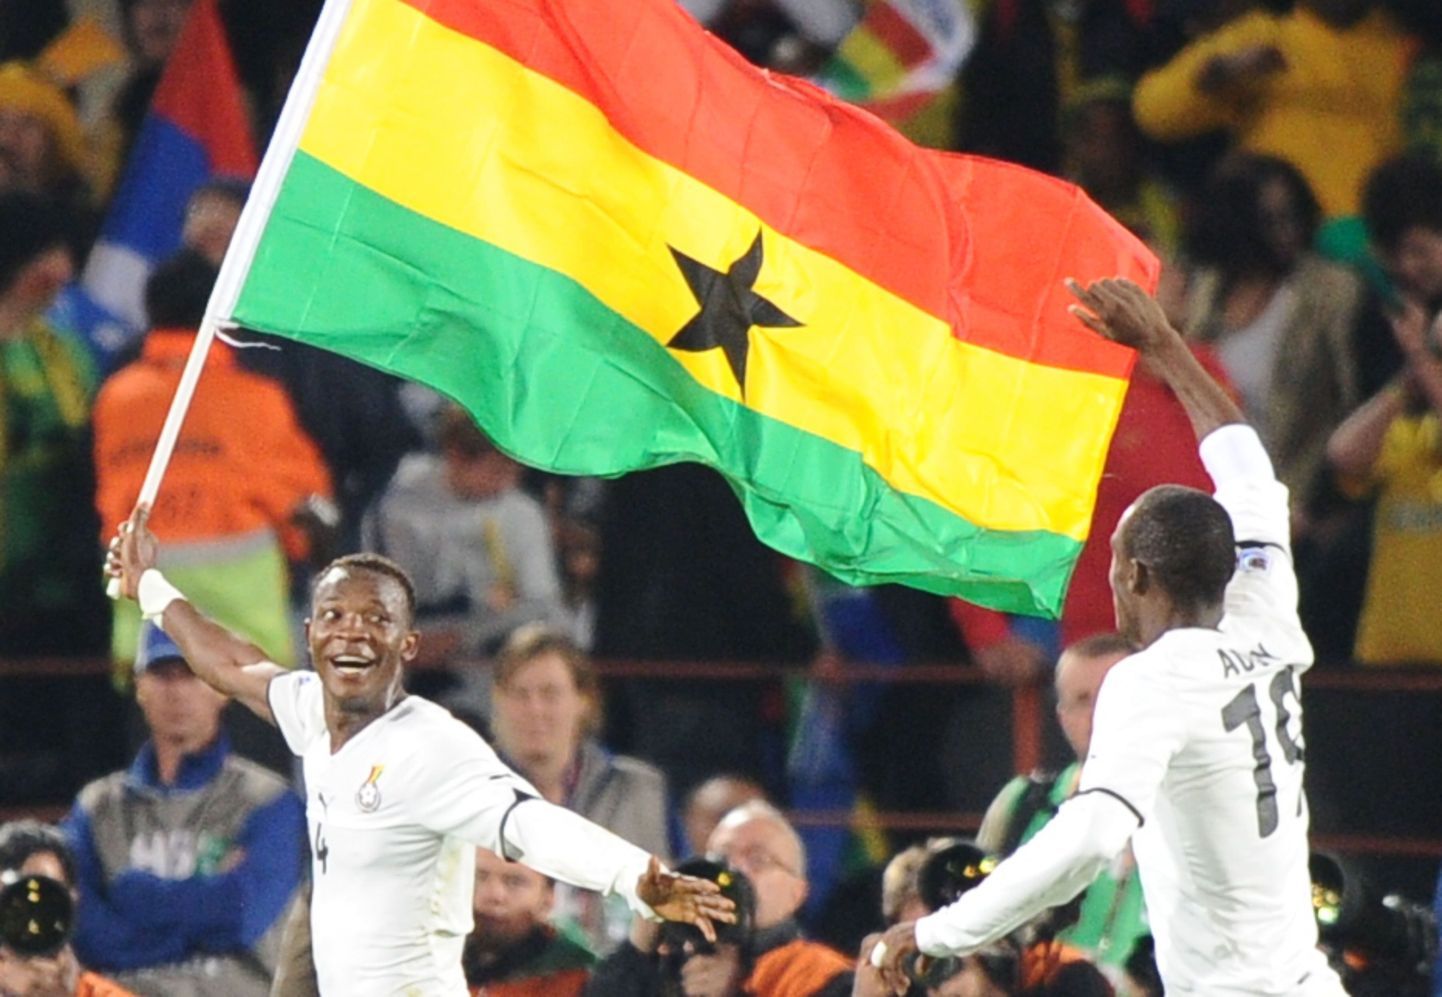 Футболист сборной Ганы празднует победу с флагом своей страны в руках (ЧМ-2010).